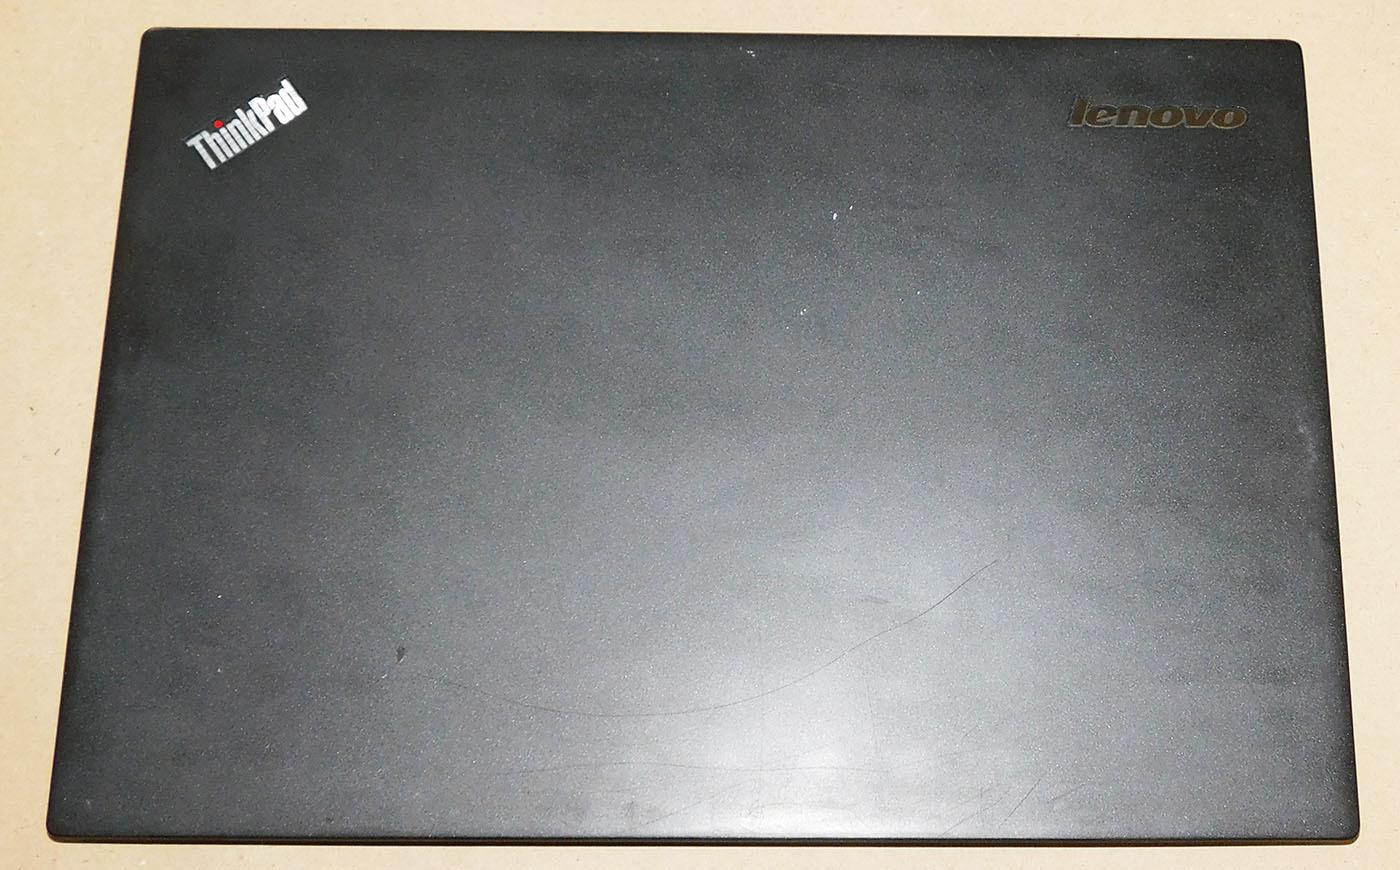 Zadný kryt LCD (LCD cover) pre notebook Lenovo Thinkpad T450s - Notebooky, príslušenstvo